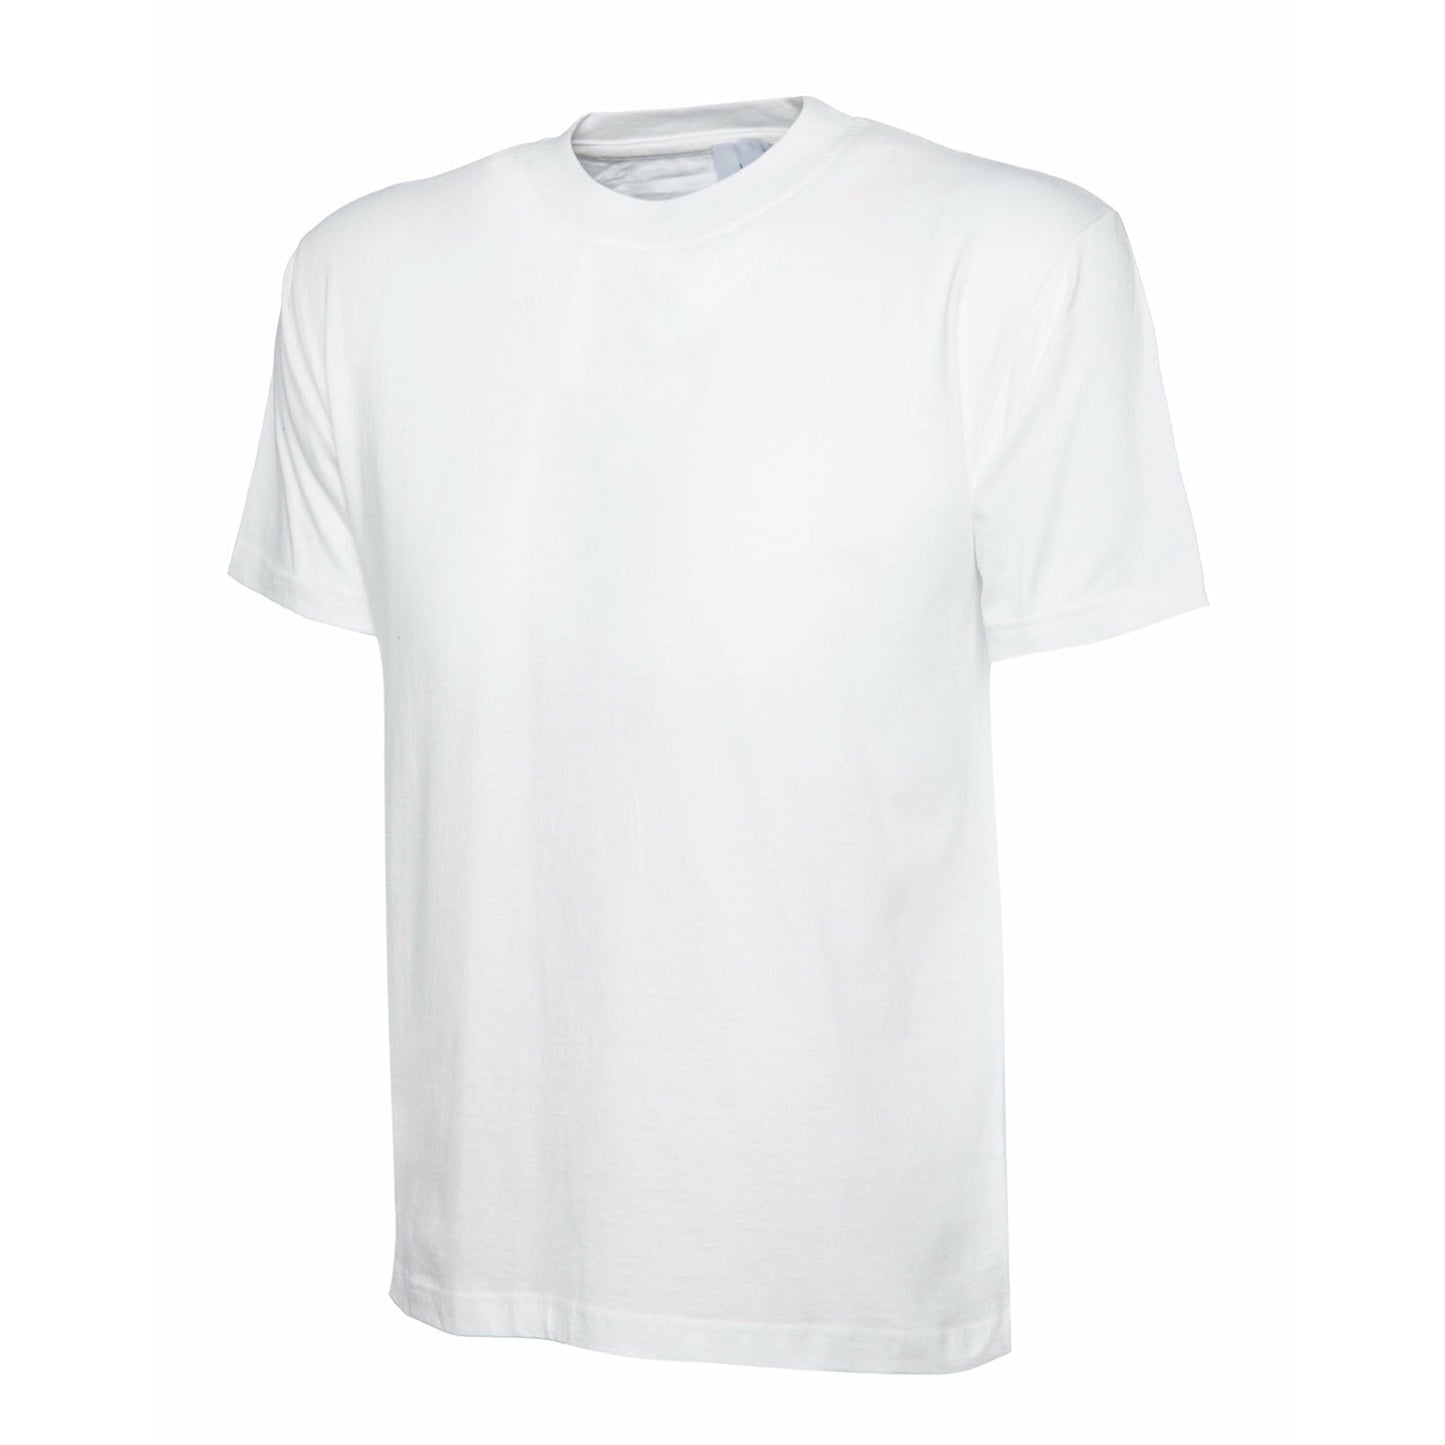 Personalised Custom T-Shirt - White